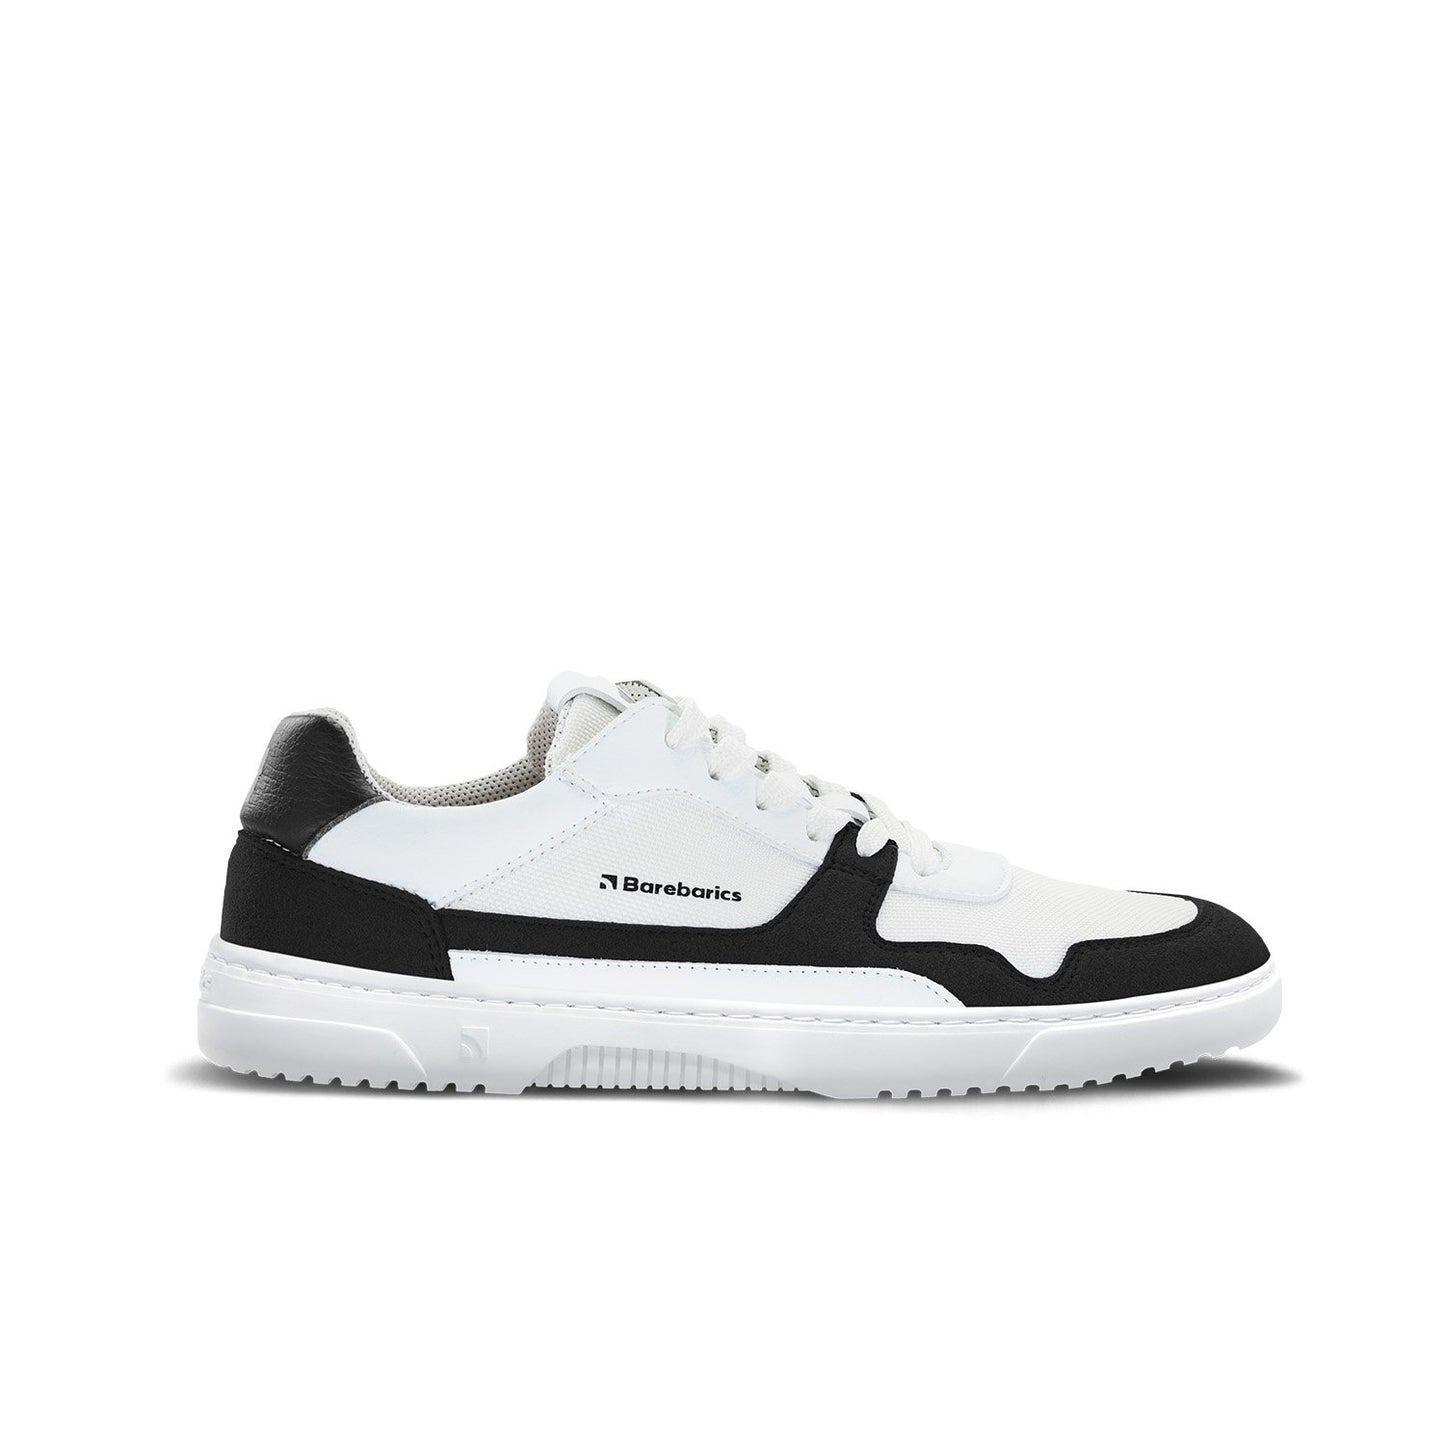 Barebarics Zing Barefoot Sneakers - White & Black